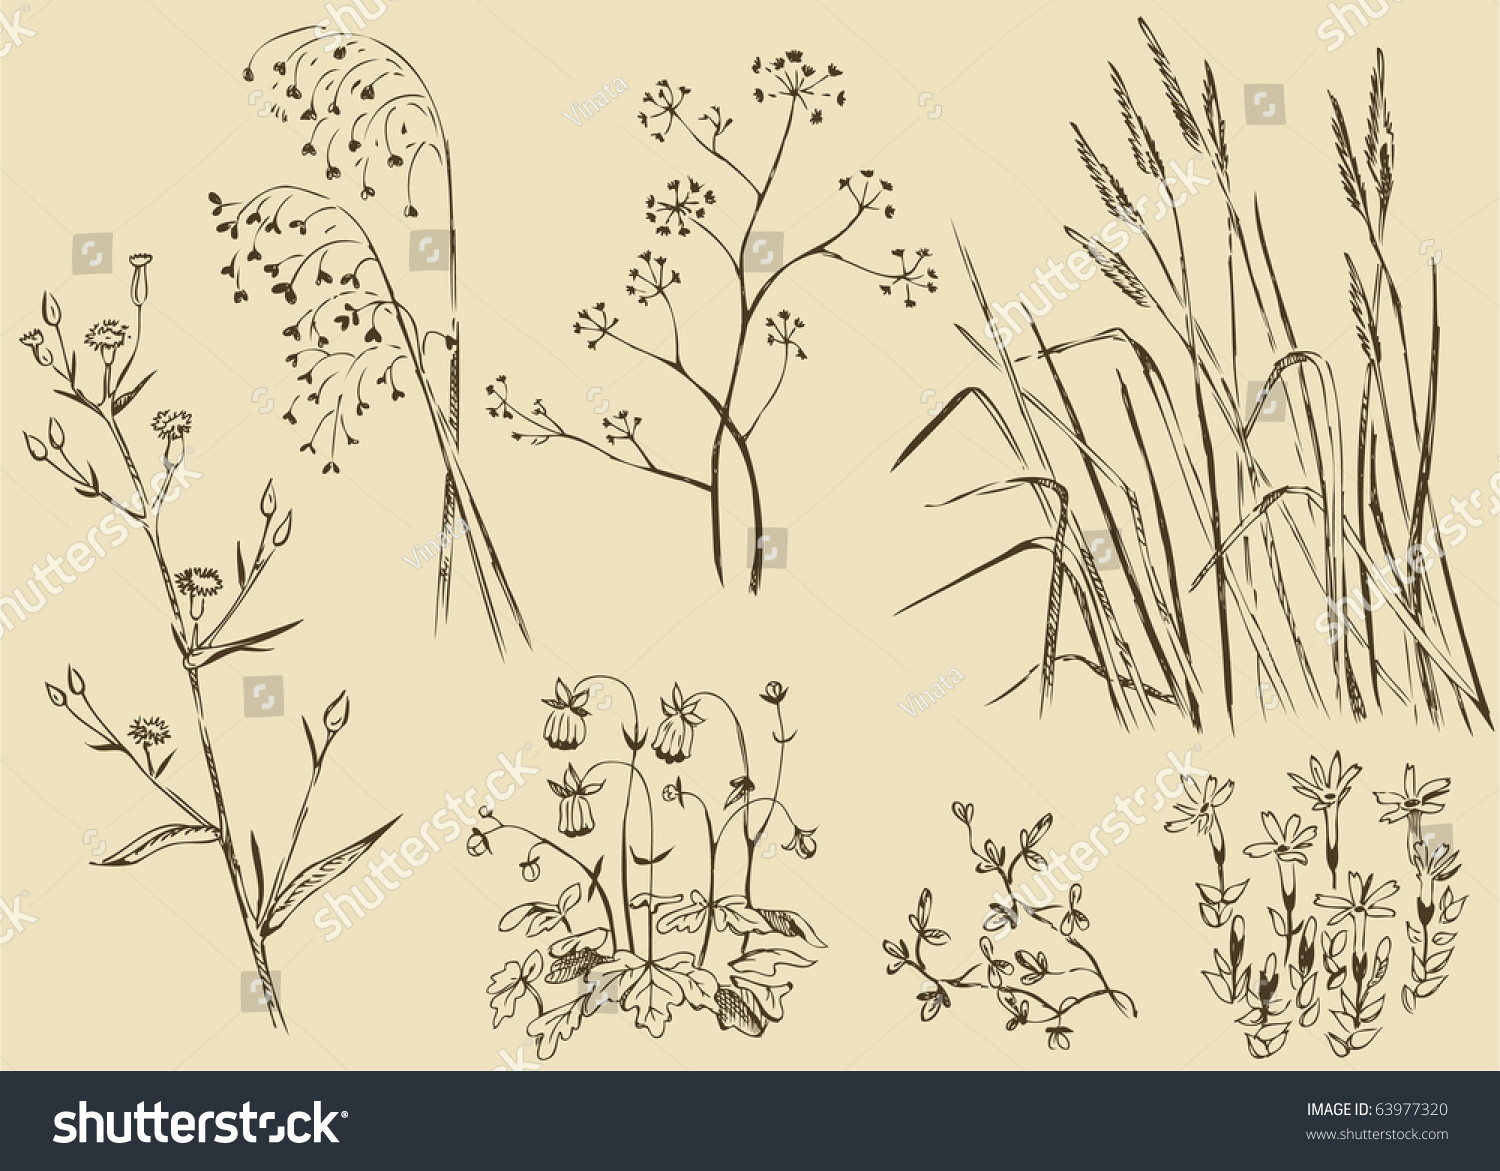 field flowers grass vector